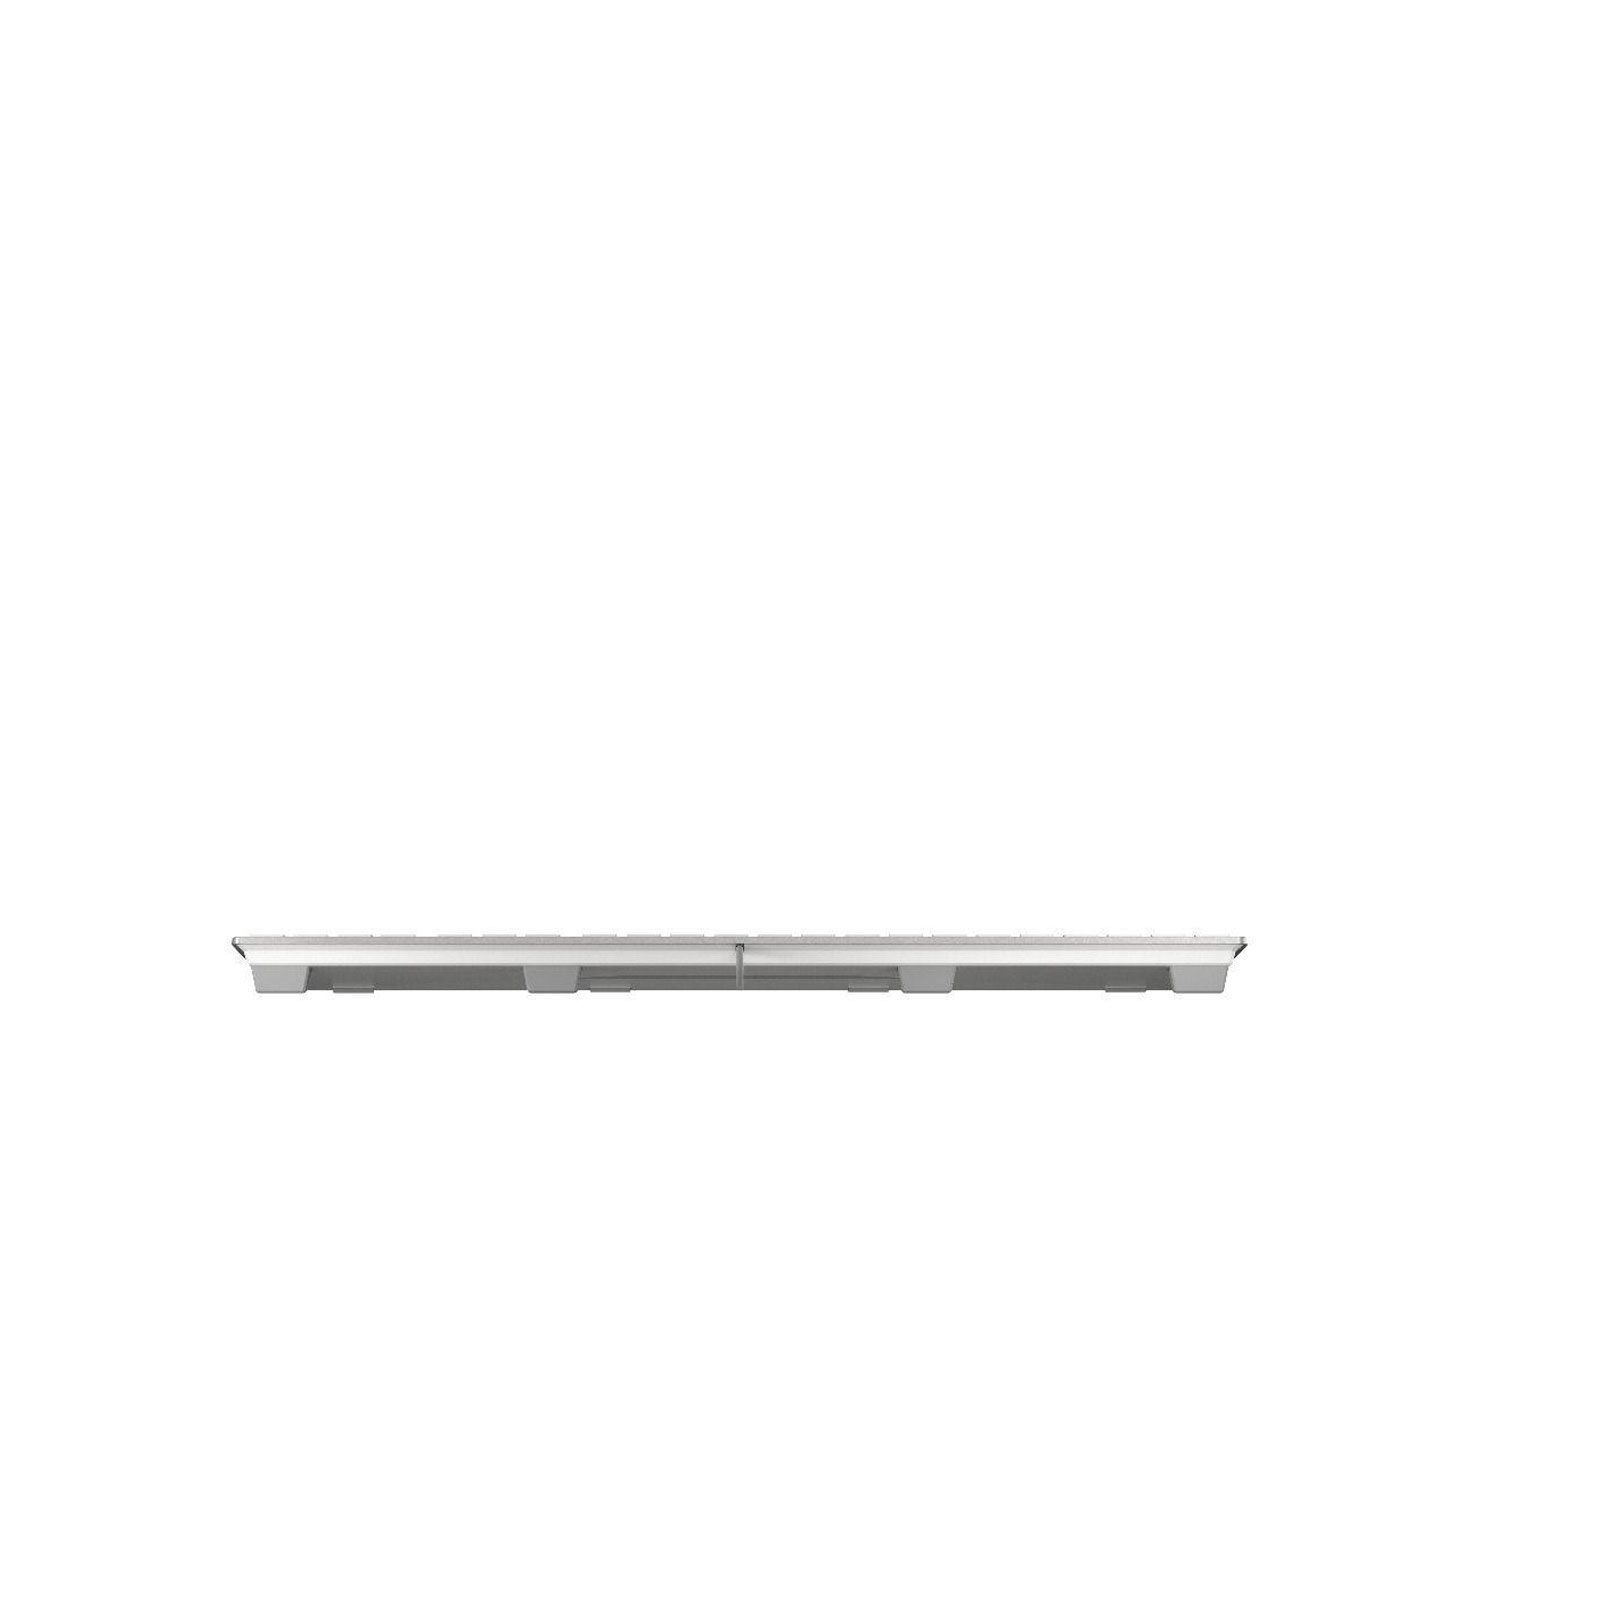 Cherry Tastatur KC 6000 Slim für Mac